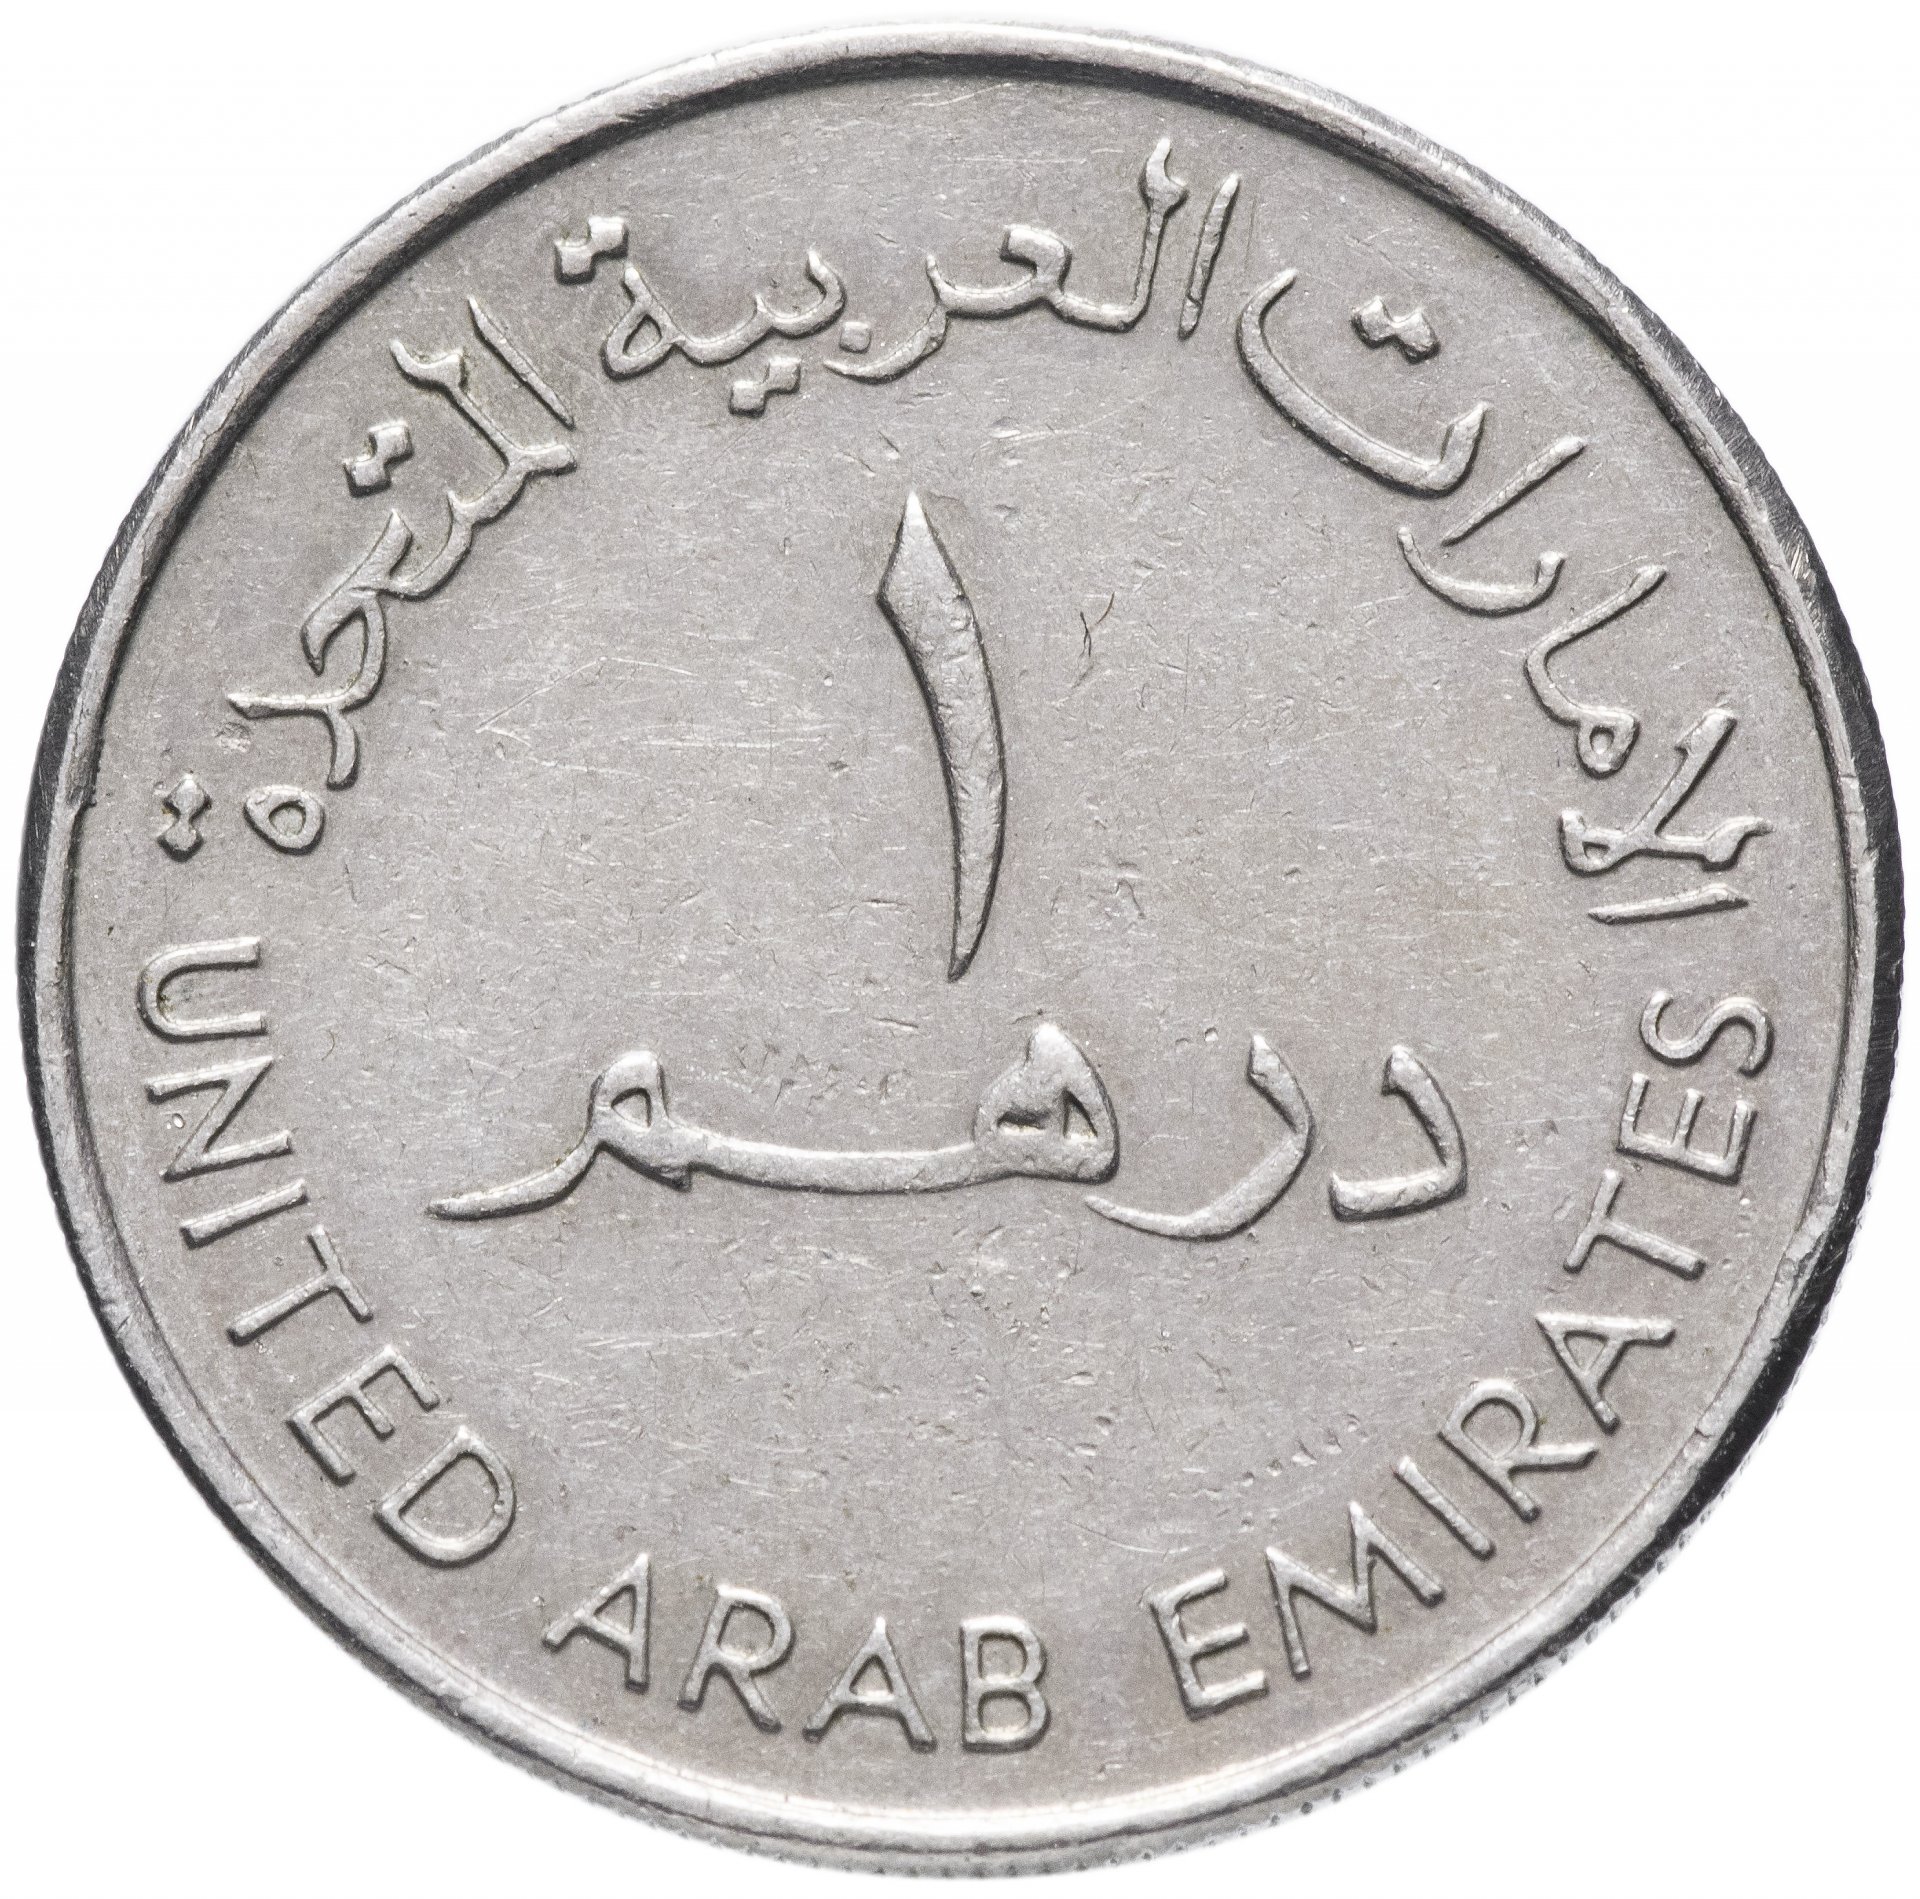 9 дирхам. Монета 1 дирхам (ОАЭ) арабские эмираты.. Монеты арабских Эмиратов. Арабская монета 1/2. 1 Дирхам 1995-2007.